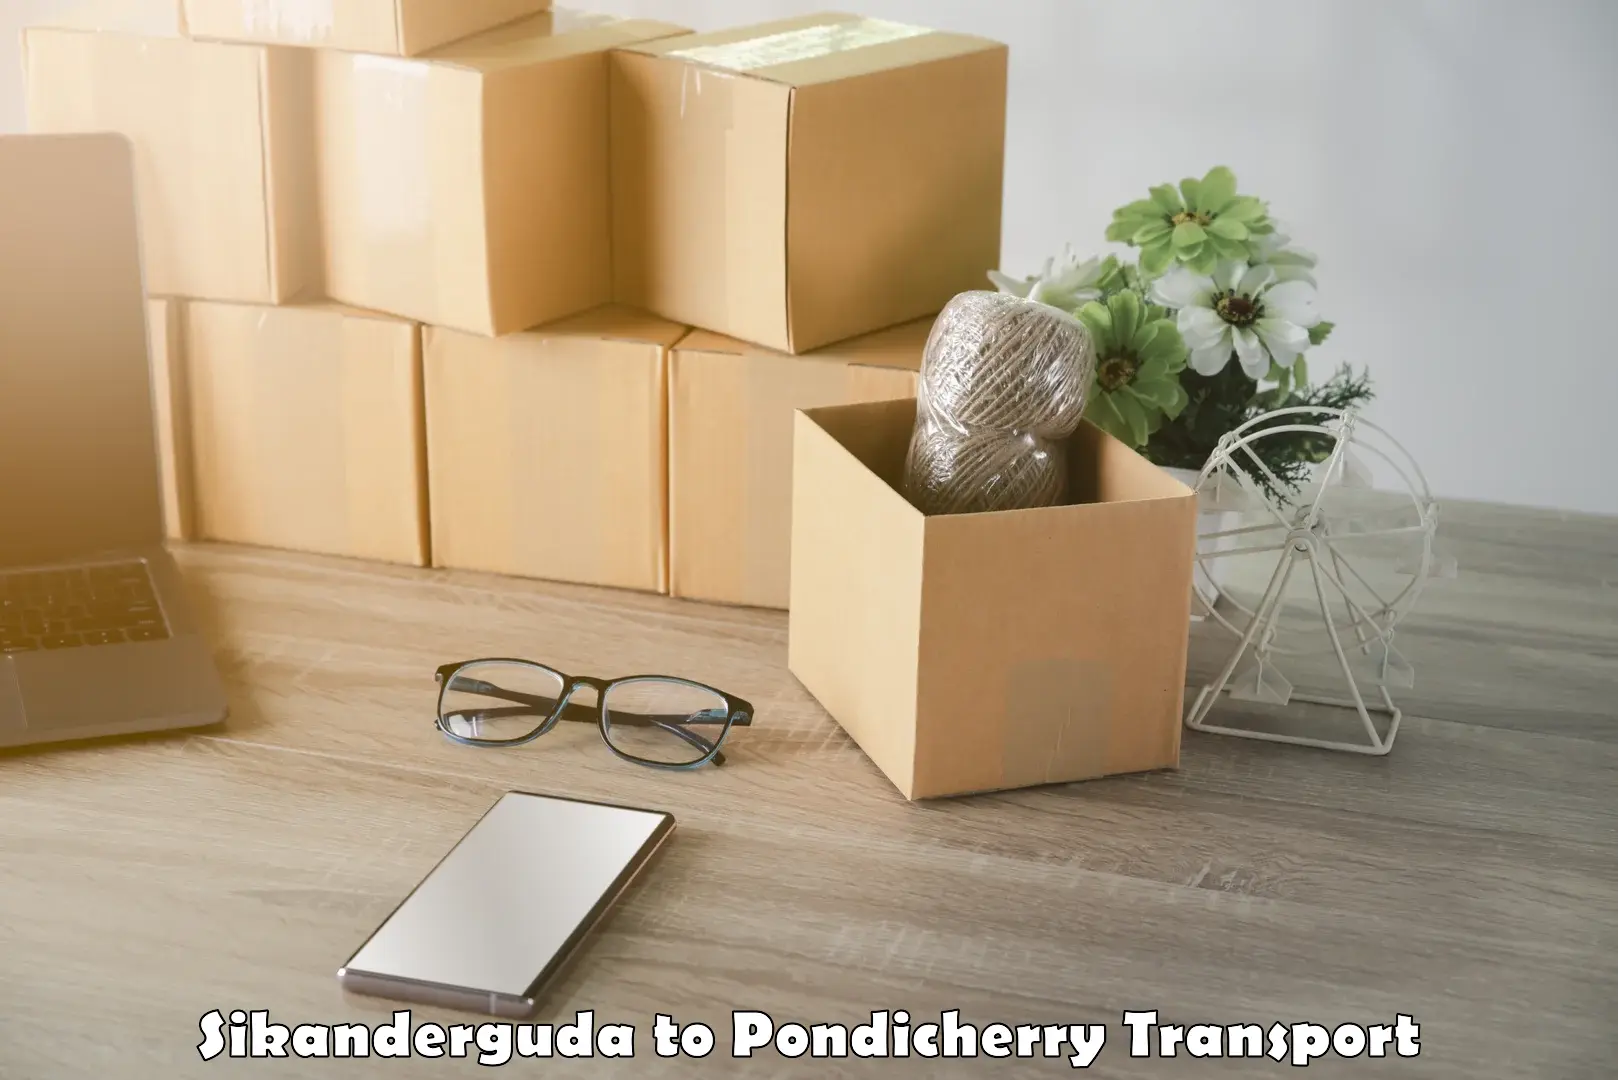 Shipping partner Sikanderguda to Pondicherry